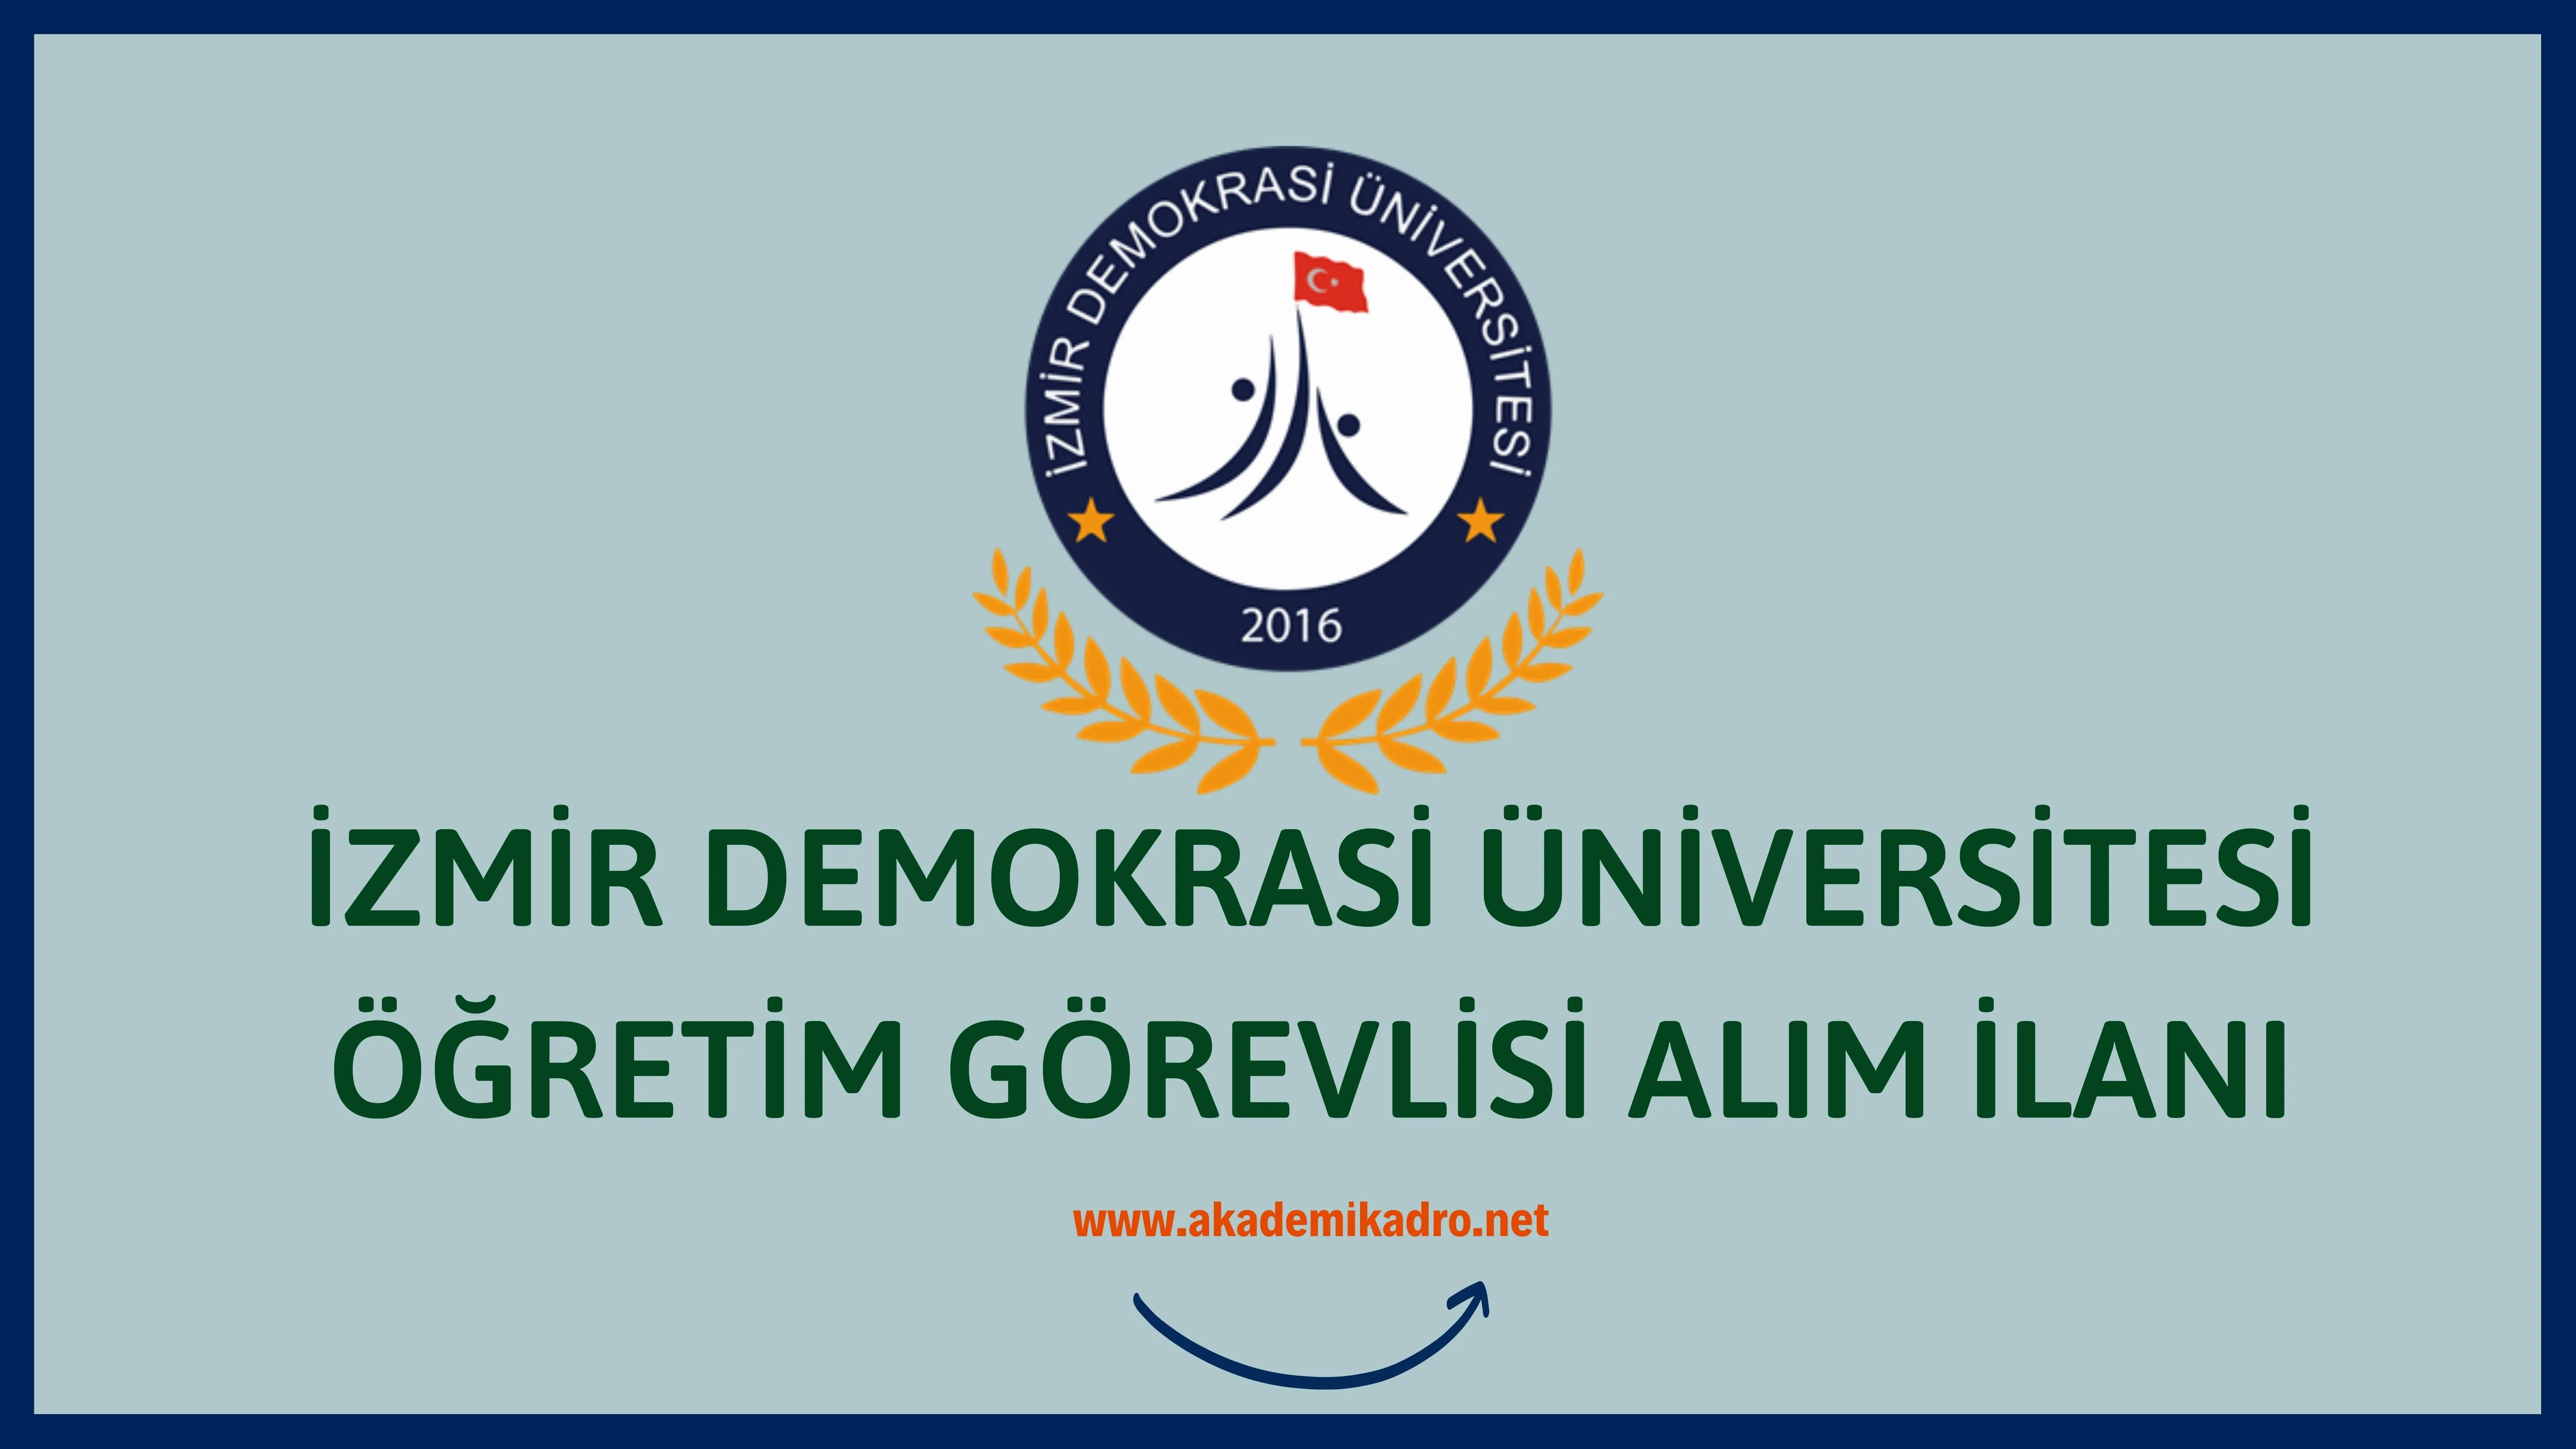 İzmir Demokrasi Üniversitesi 3 Öğretim görevlisi alacak.